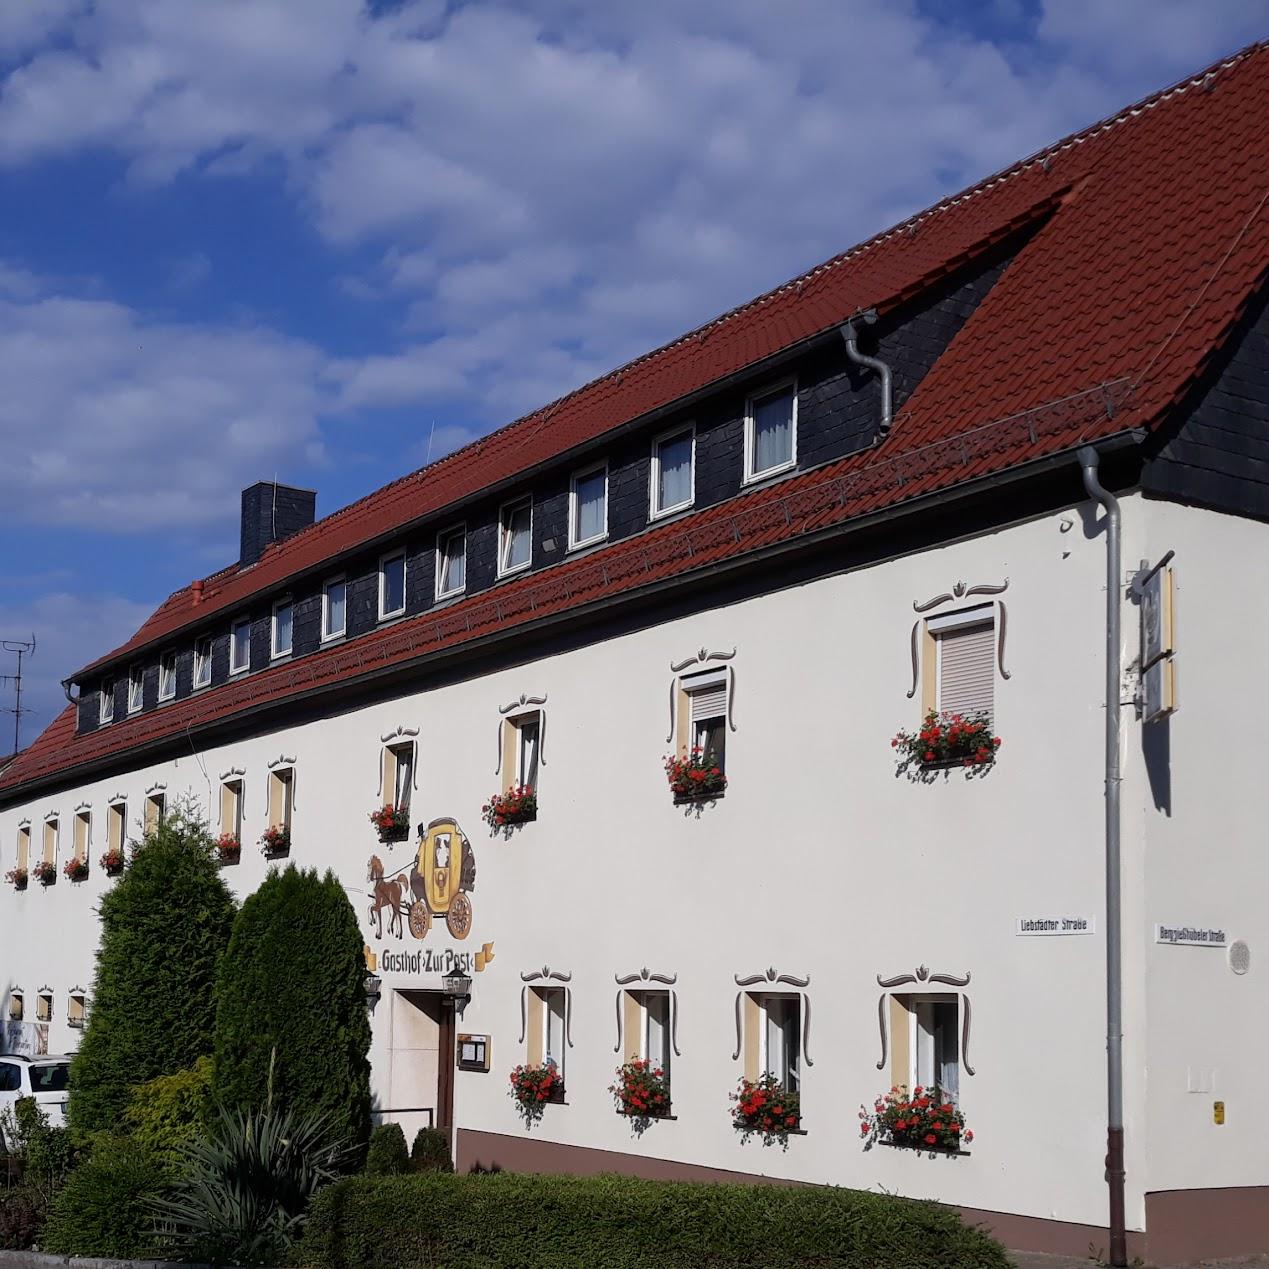 Restaurant "Hotel Zur Post" in Pirna